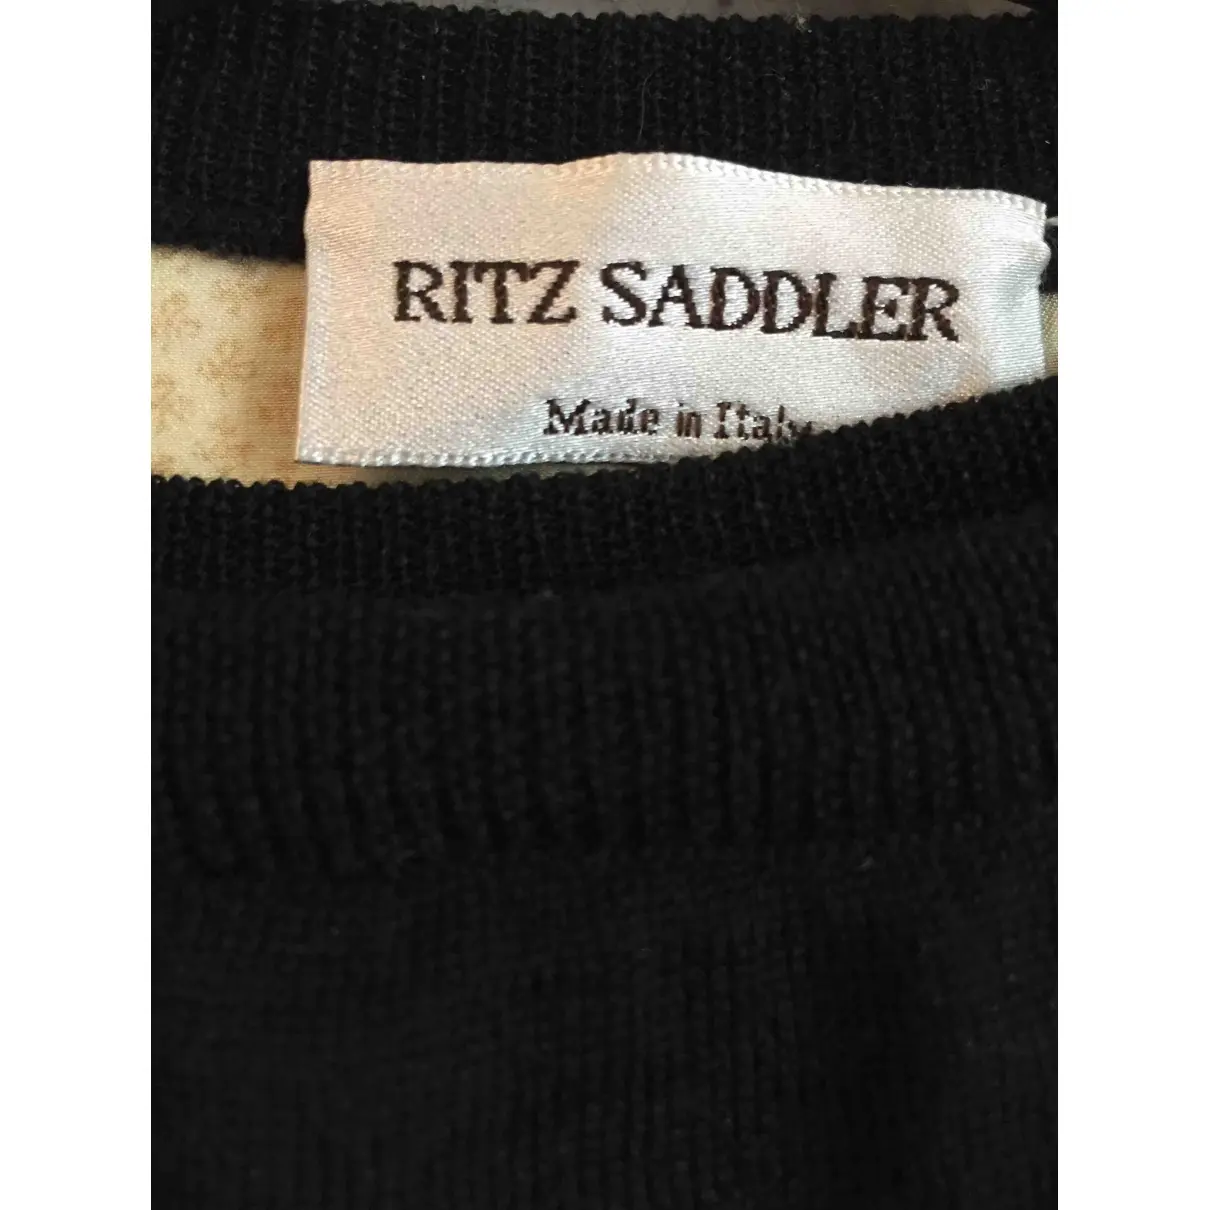 Buy Ritz Saddler Silk twin-set online